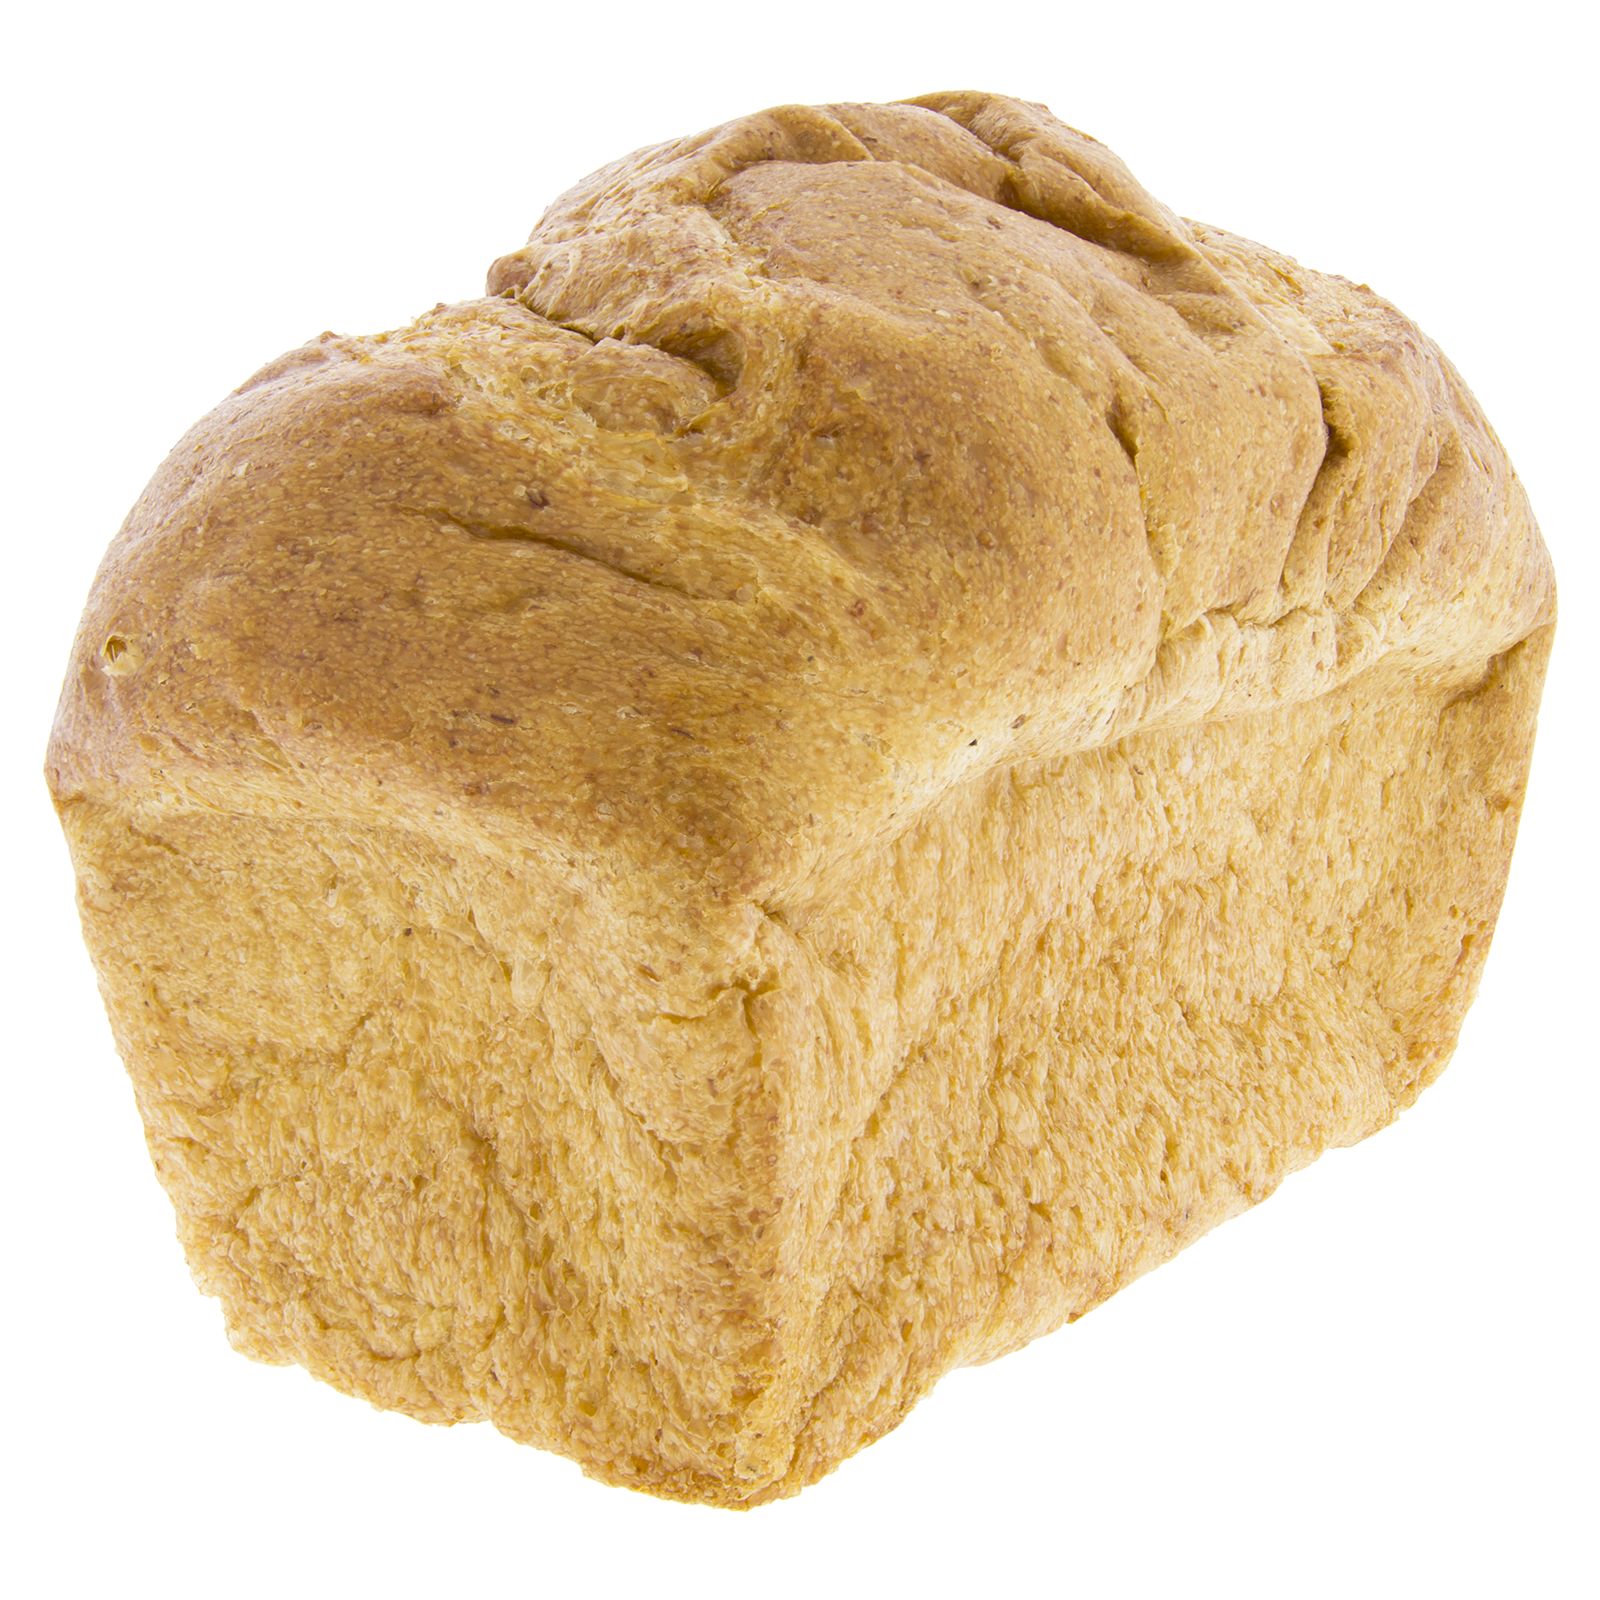 El pan de trigo sarraceno ecológico de Biopanadería: una opción saluda